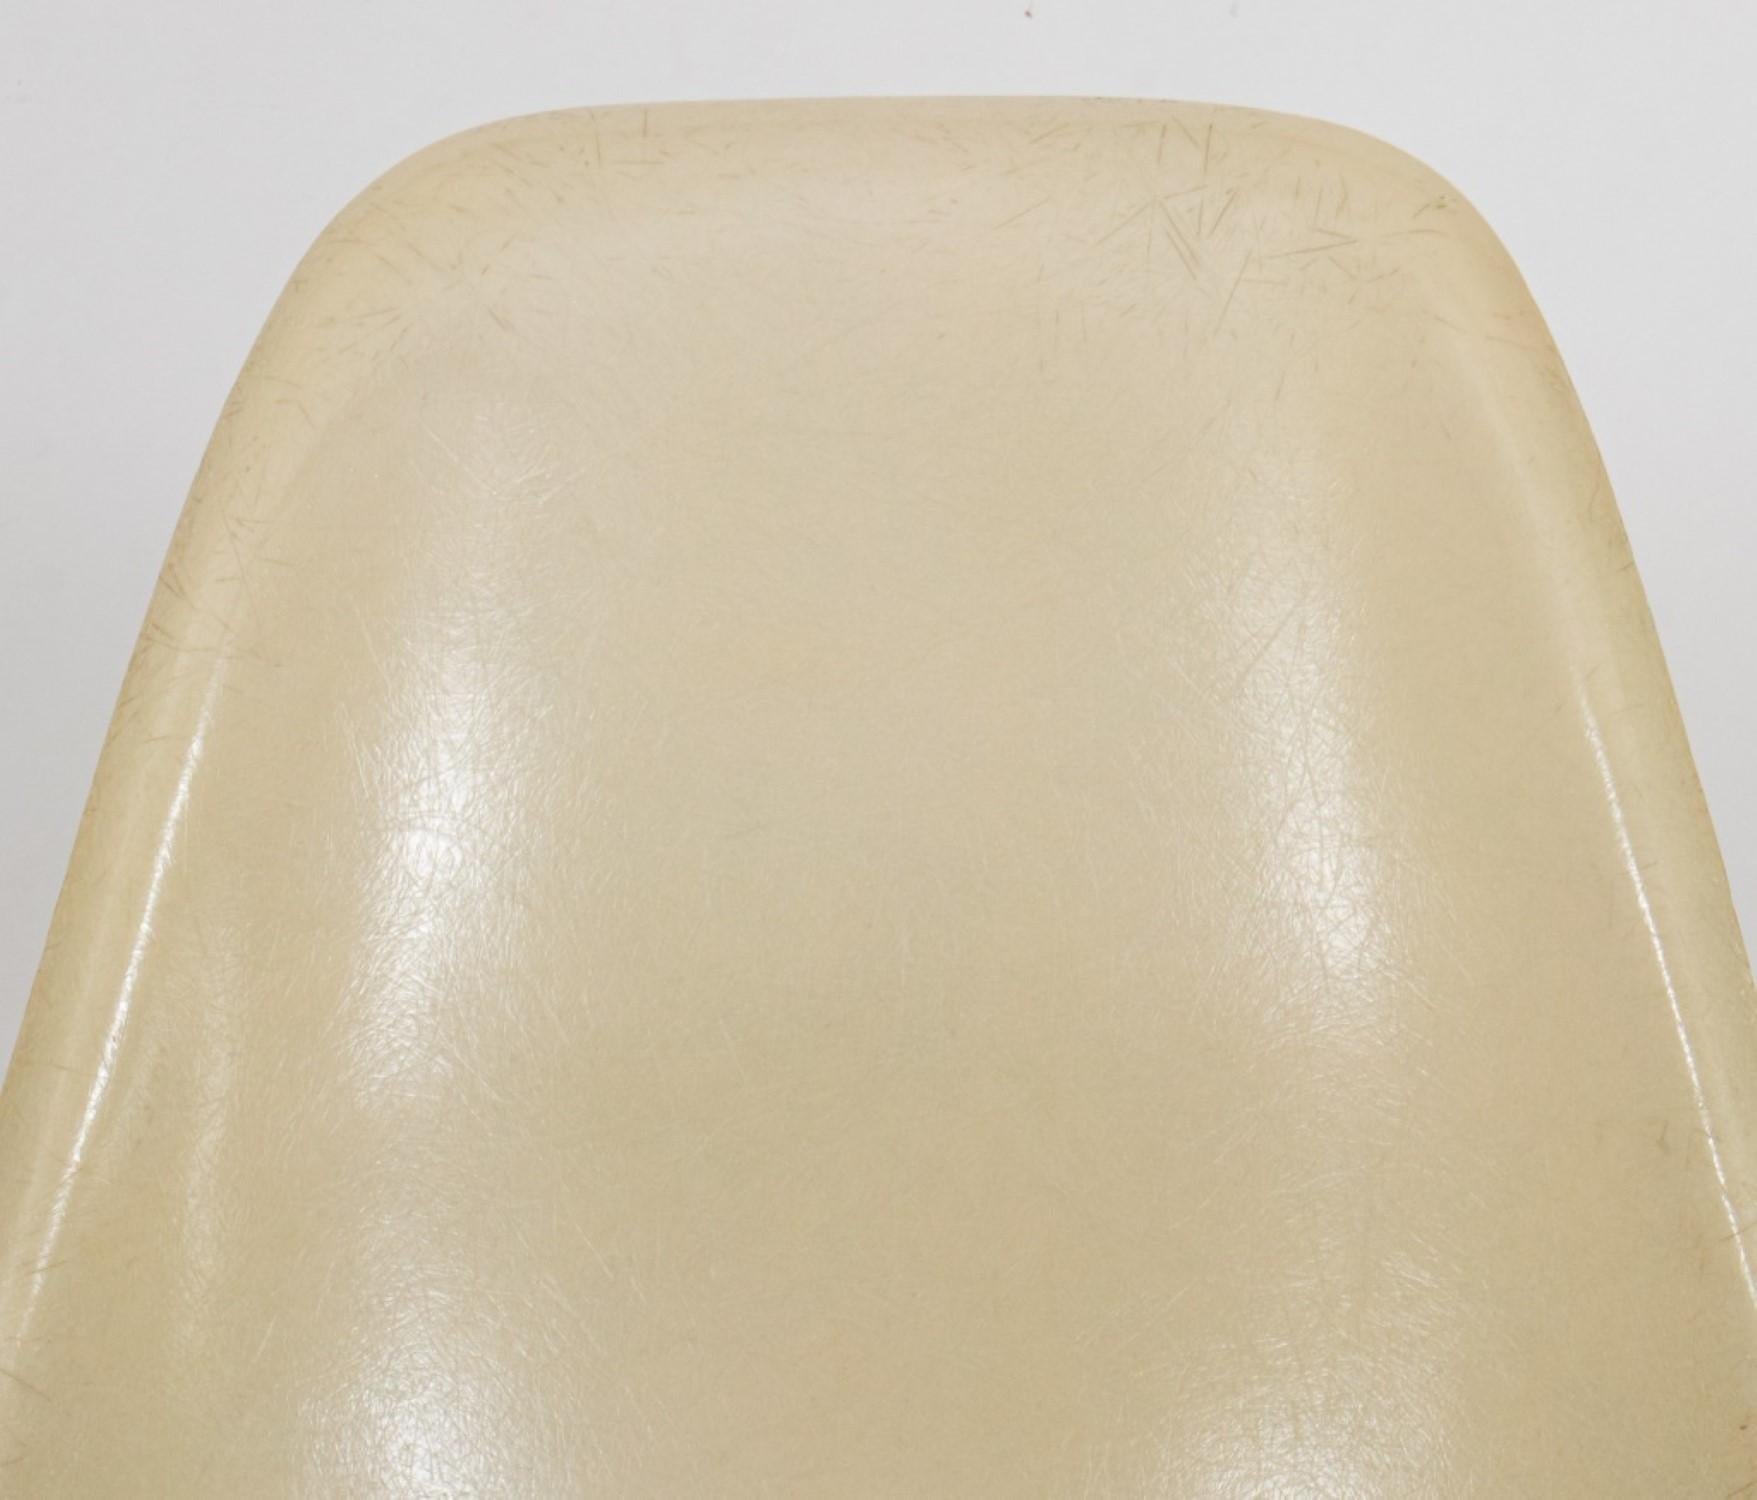 Eames for Herman Miller Fiberglass Shell Chair For Sale 1